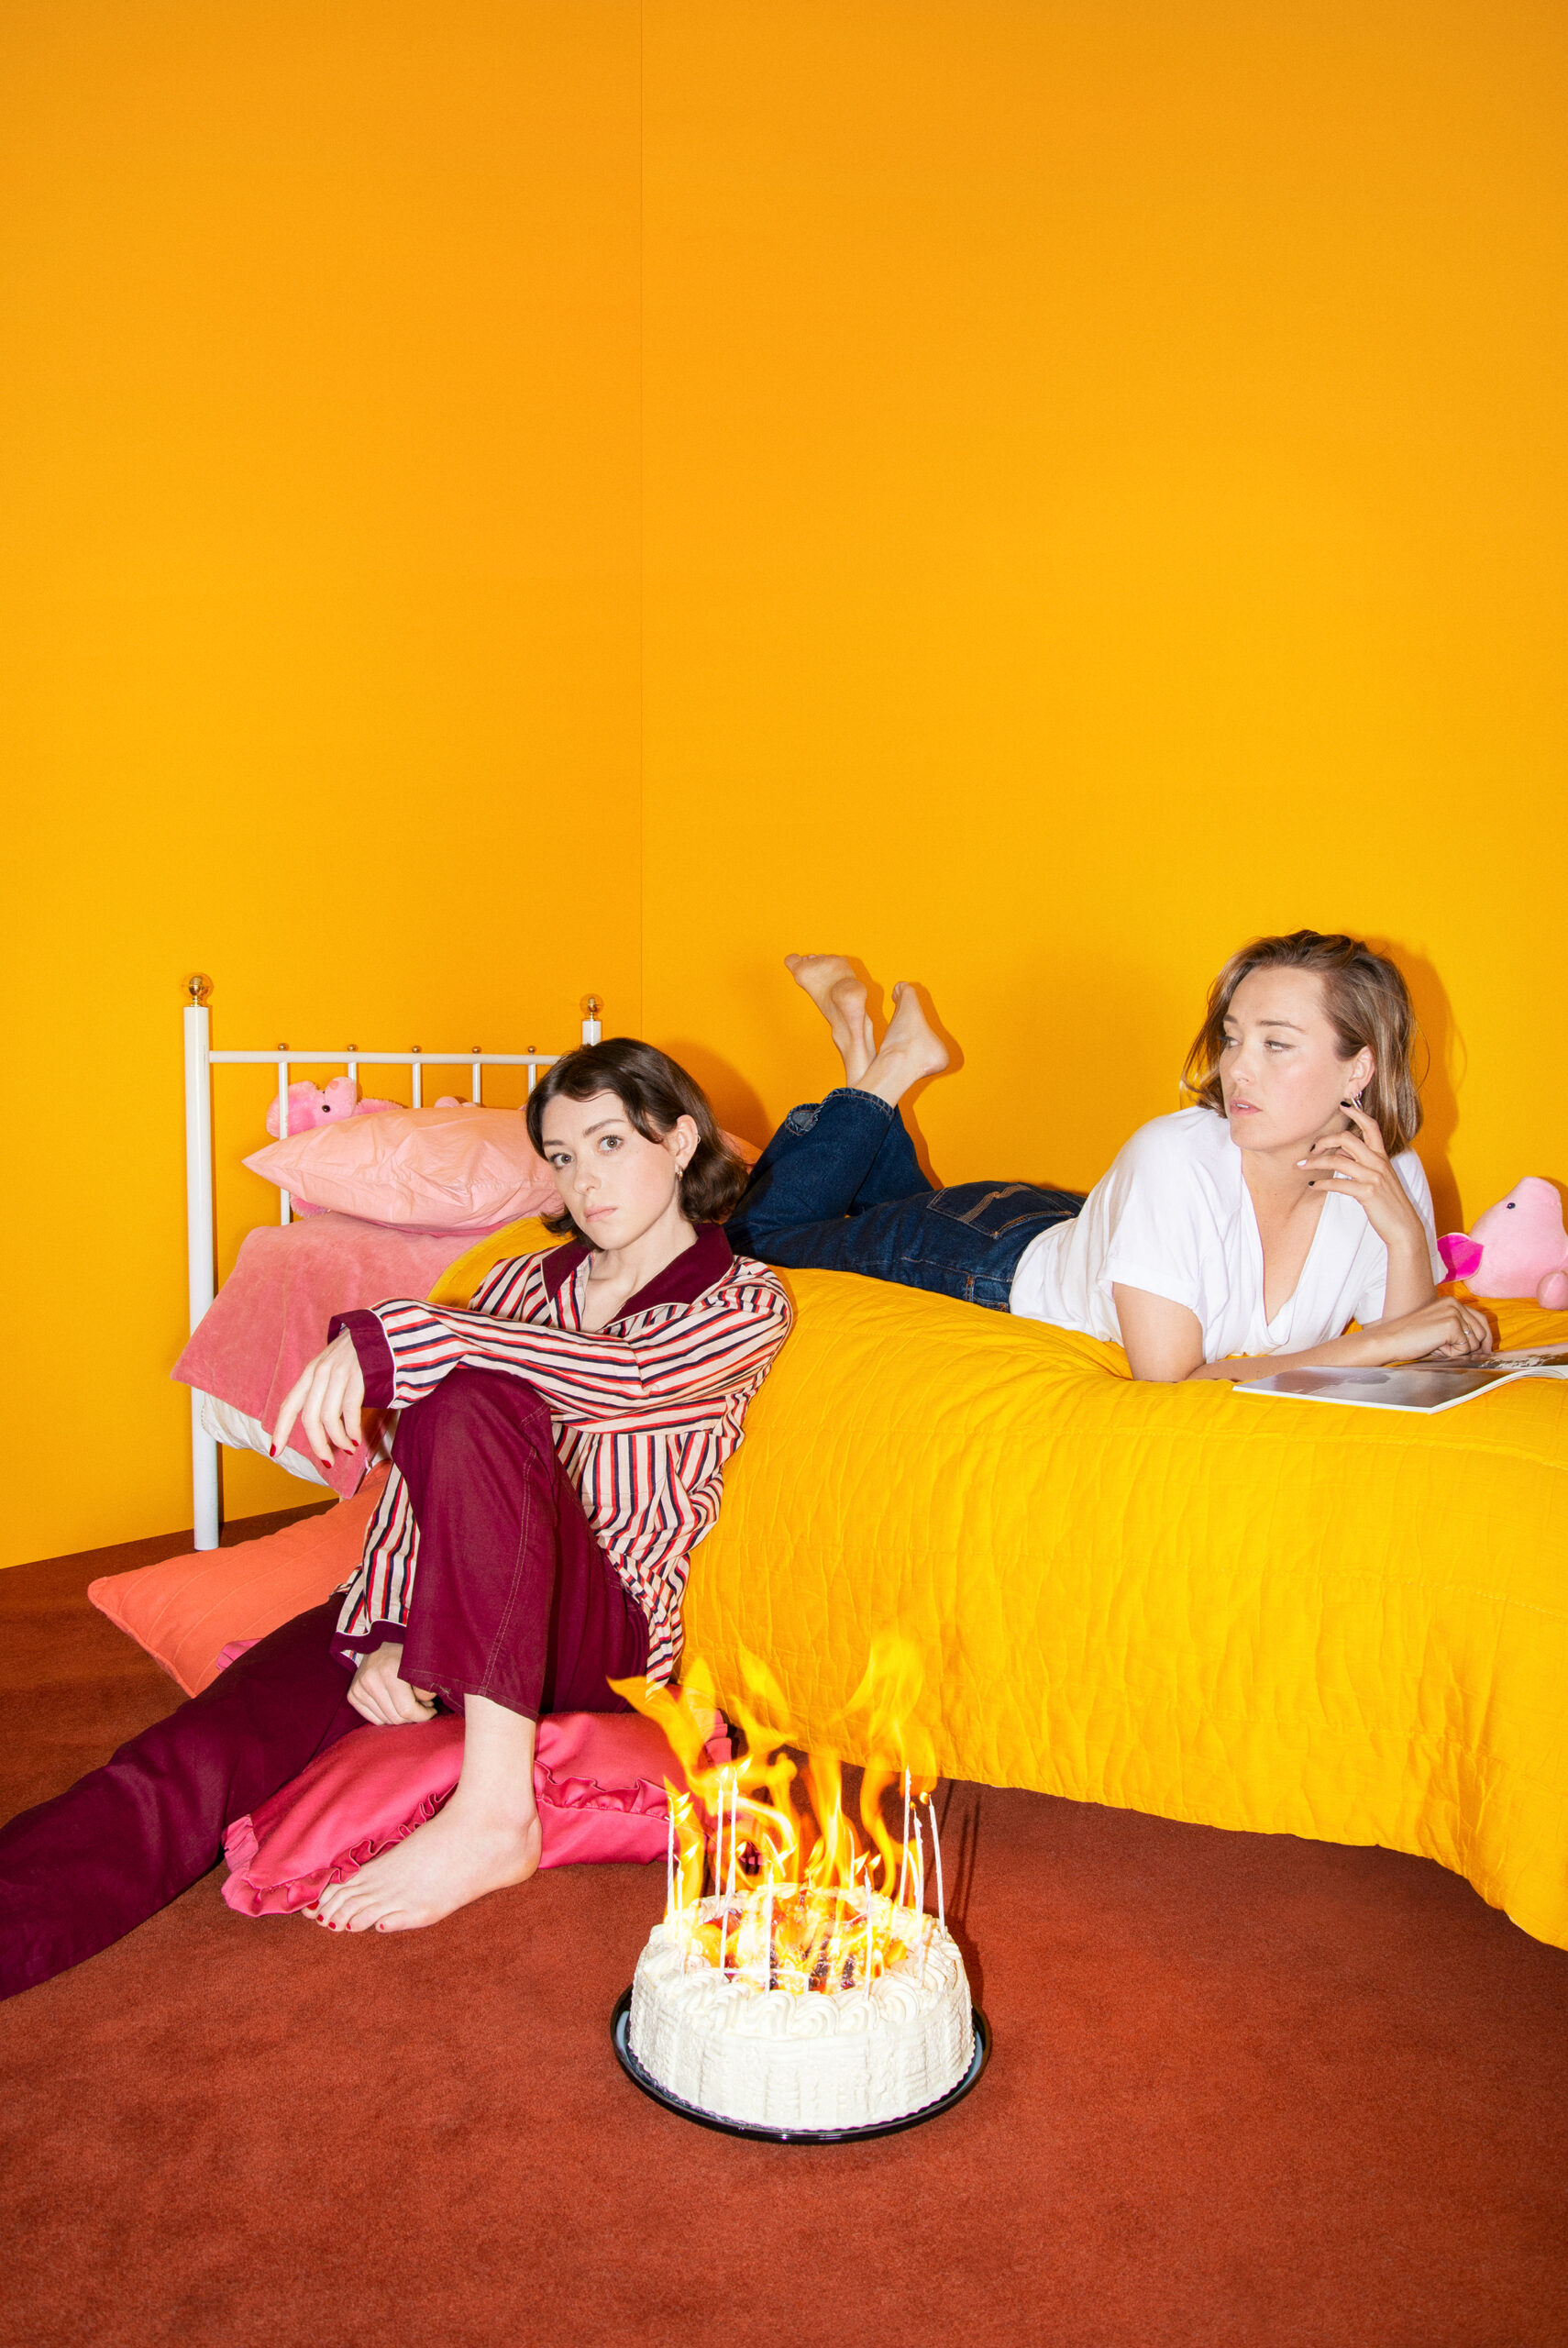 Tvp systrar i ett sovrum som går i orange, en brinnande tårta i förgrunden